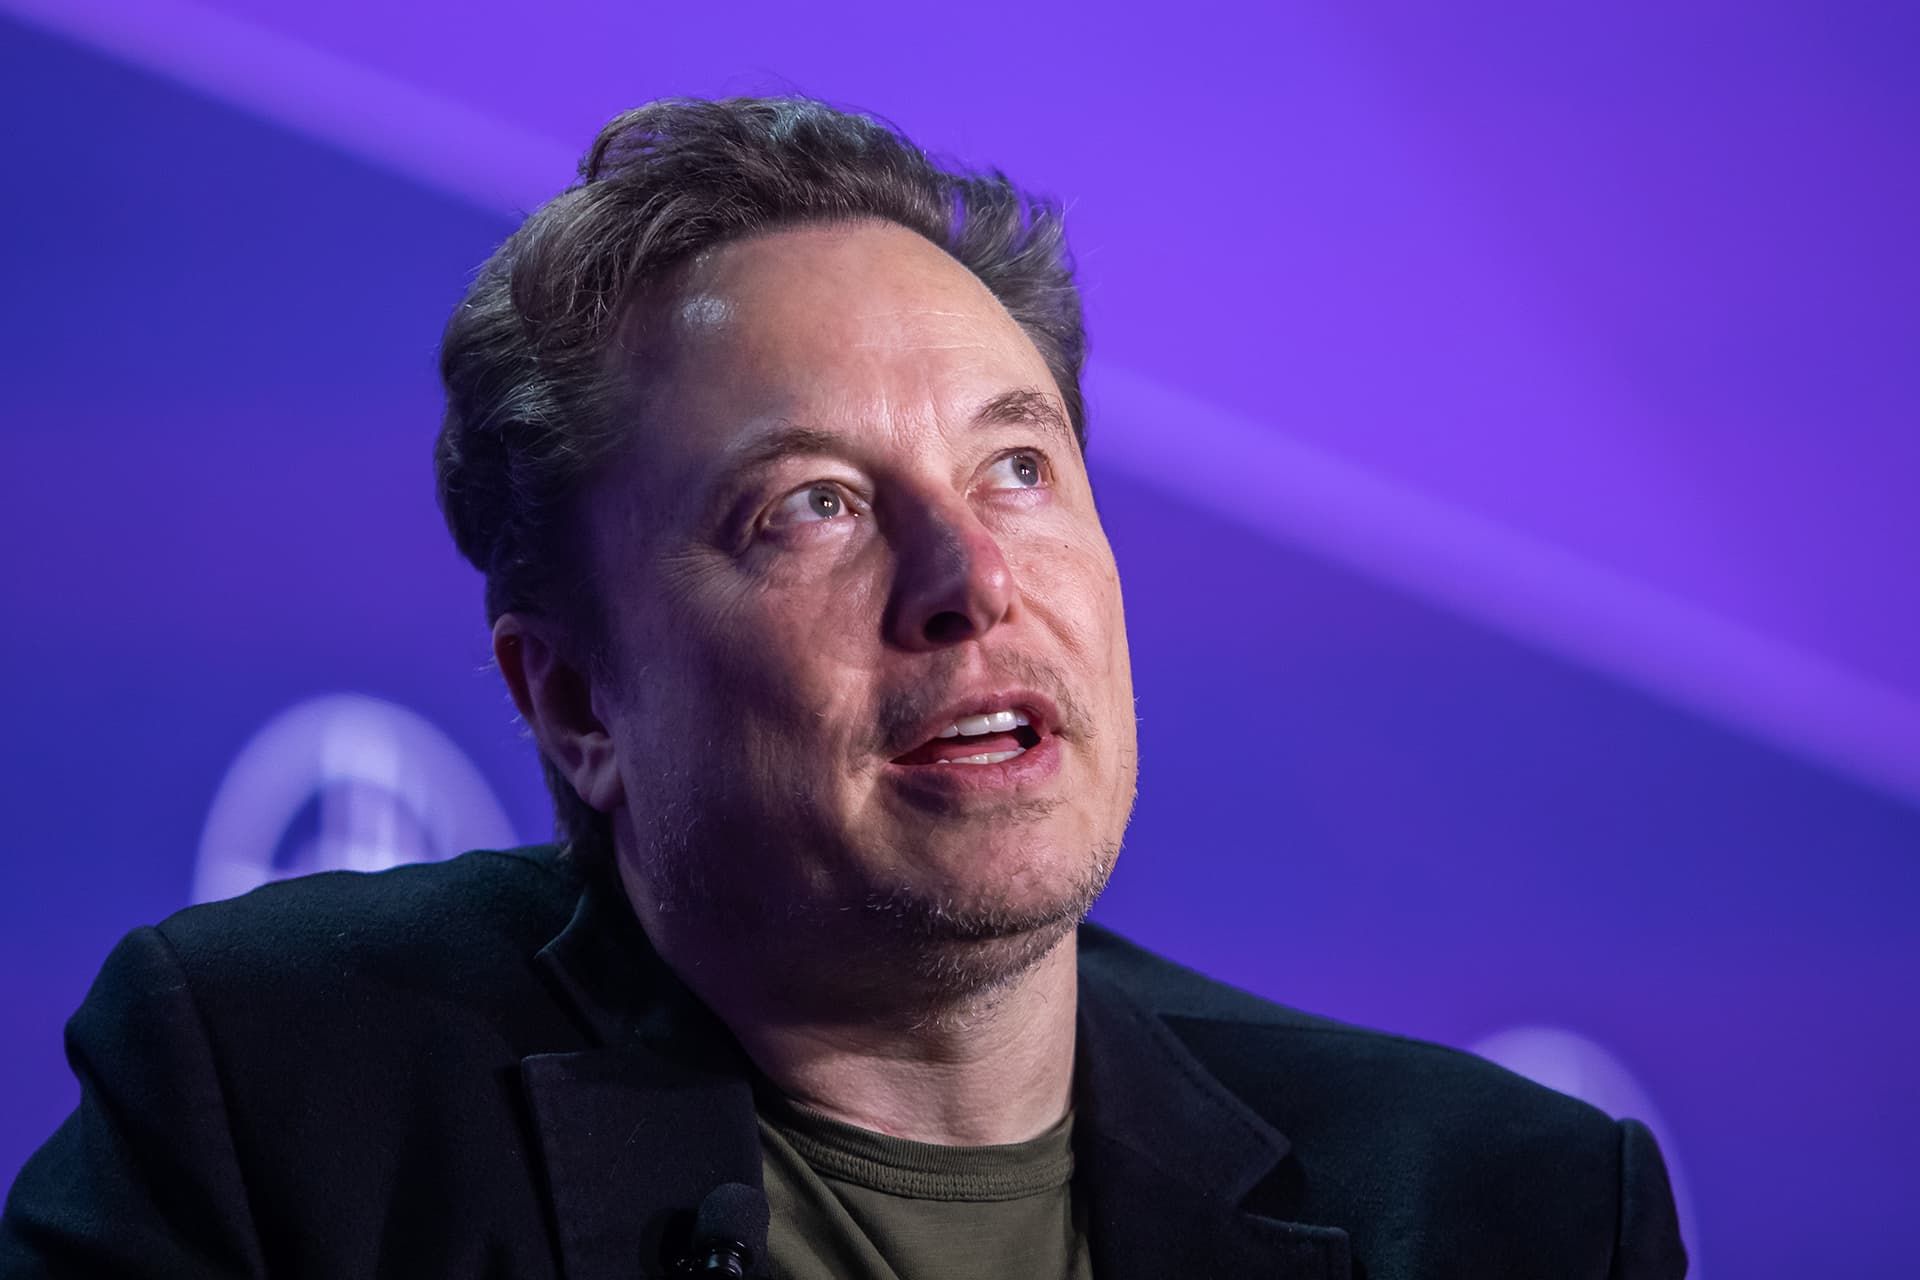 چهره ایلان ماسک / Elon Musk از نمای نزدیک پس زمینه بنفش